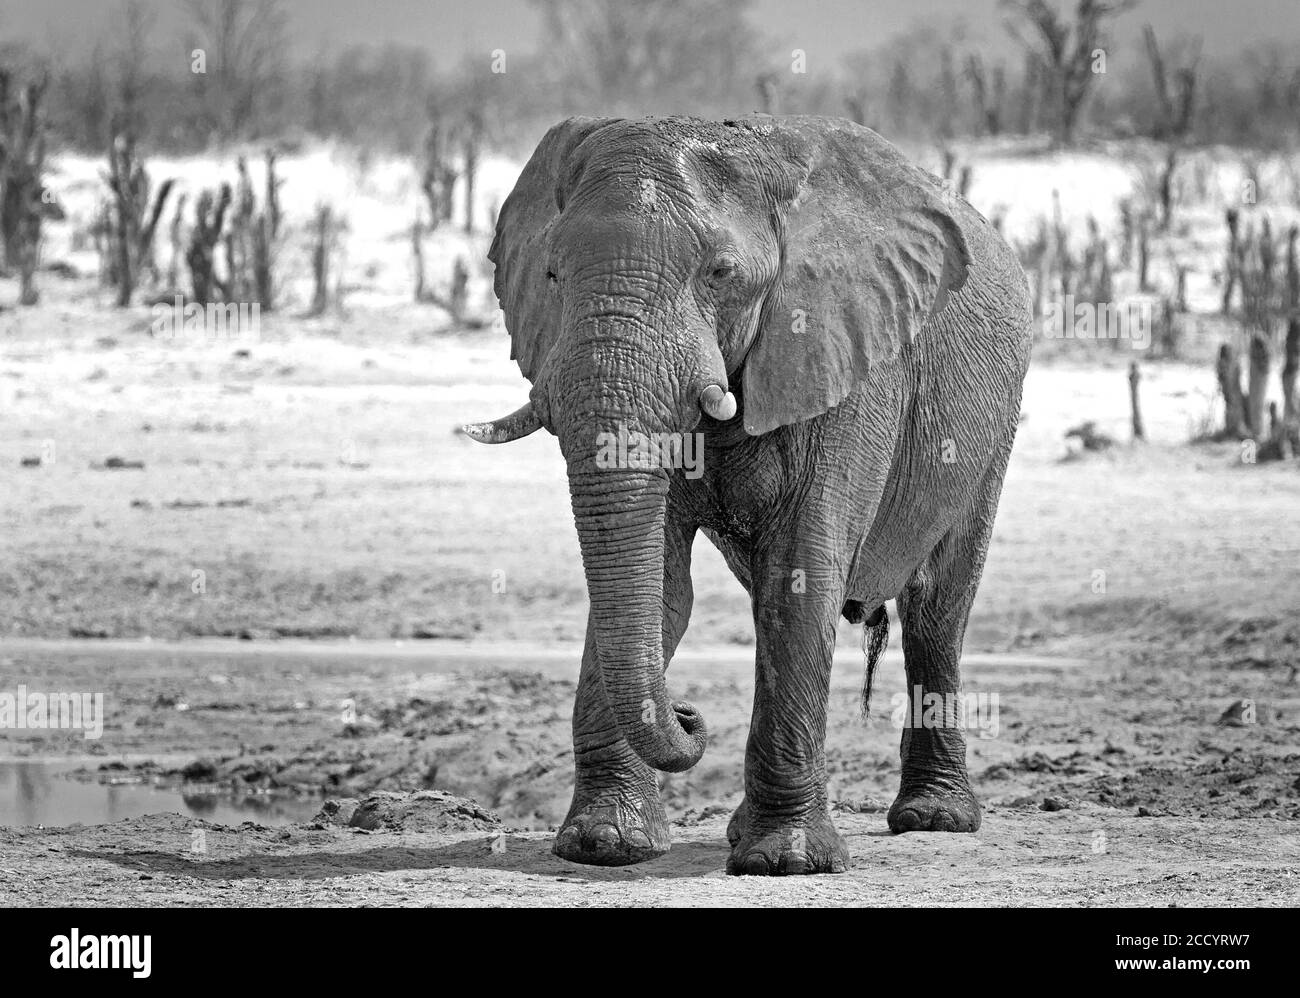 Schwarz-Weiß-Bild eines großen afrikanischen Elefanten stehend Auf der Afrikanischen Ebene im Hwange Nationalpark Simbabwe Stockfoto